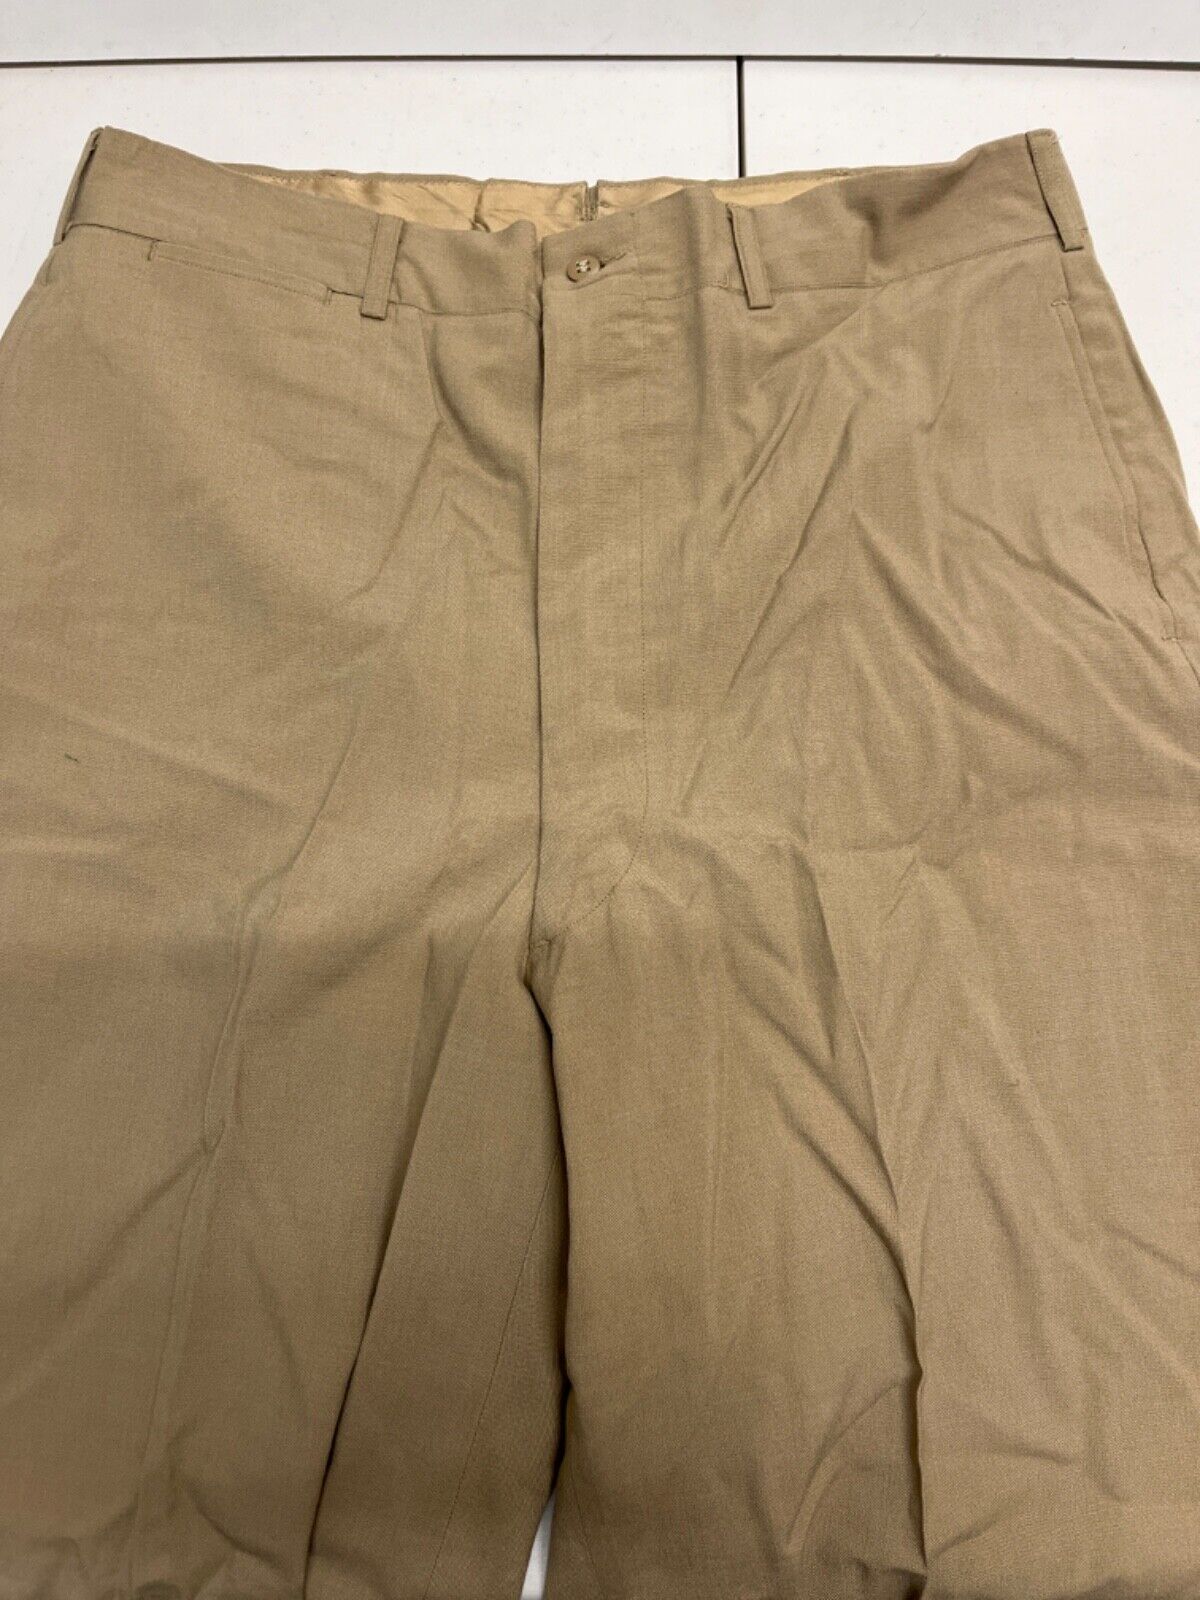 Vintage Italian Uniform Kahki Colored Pants